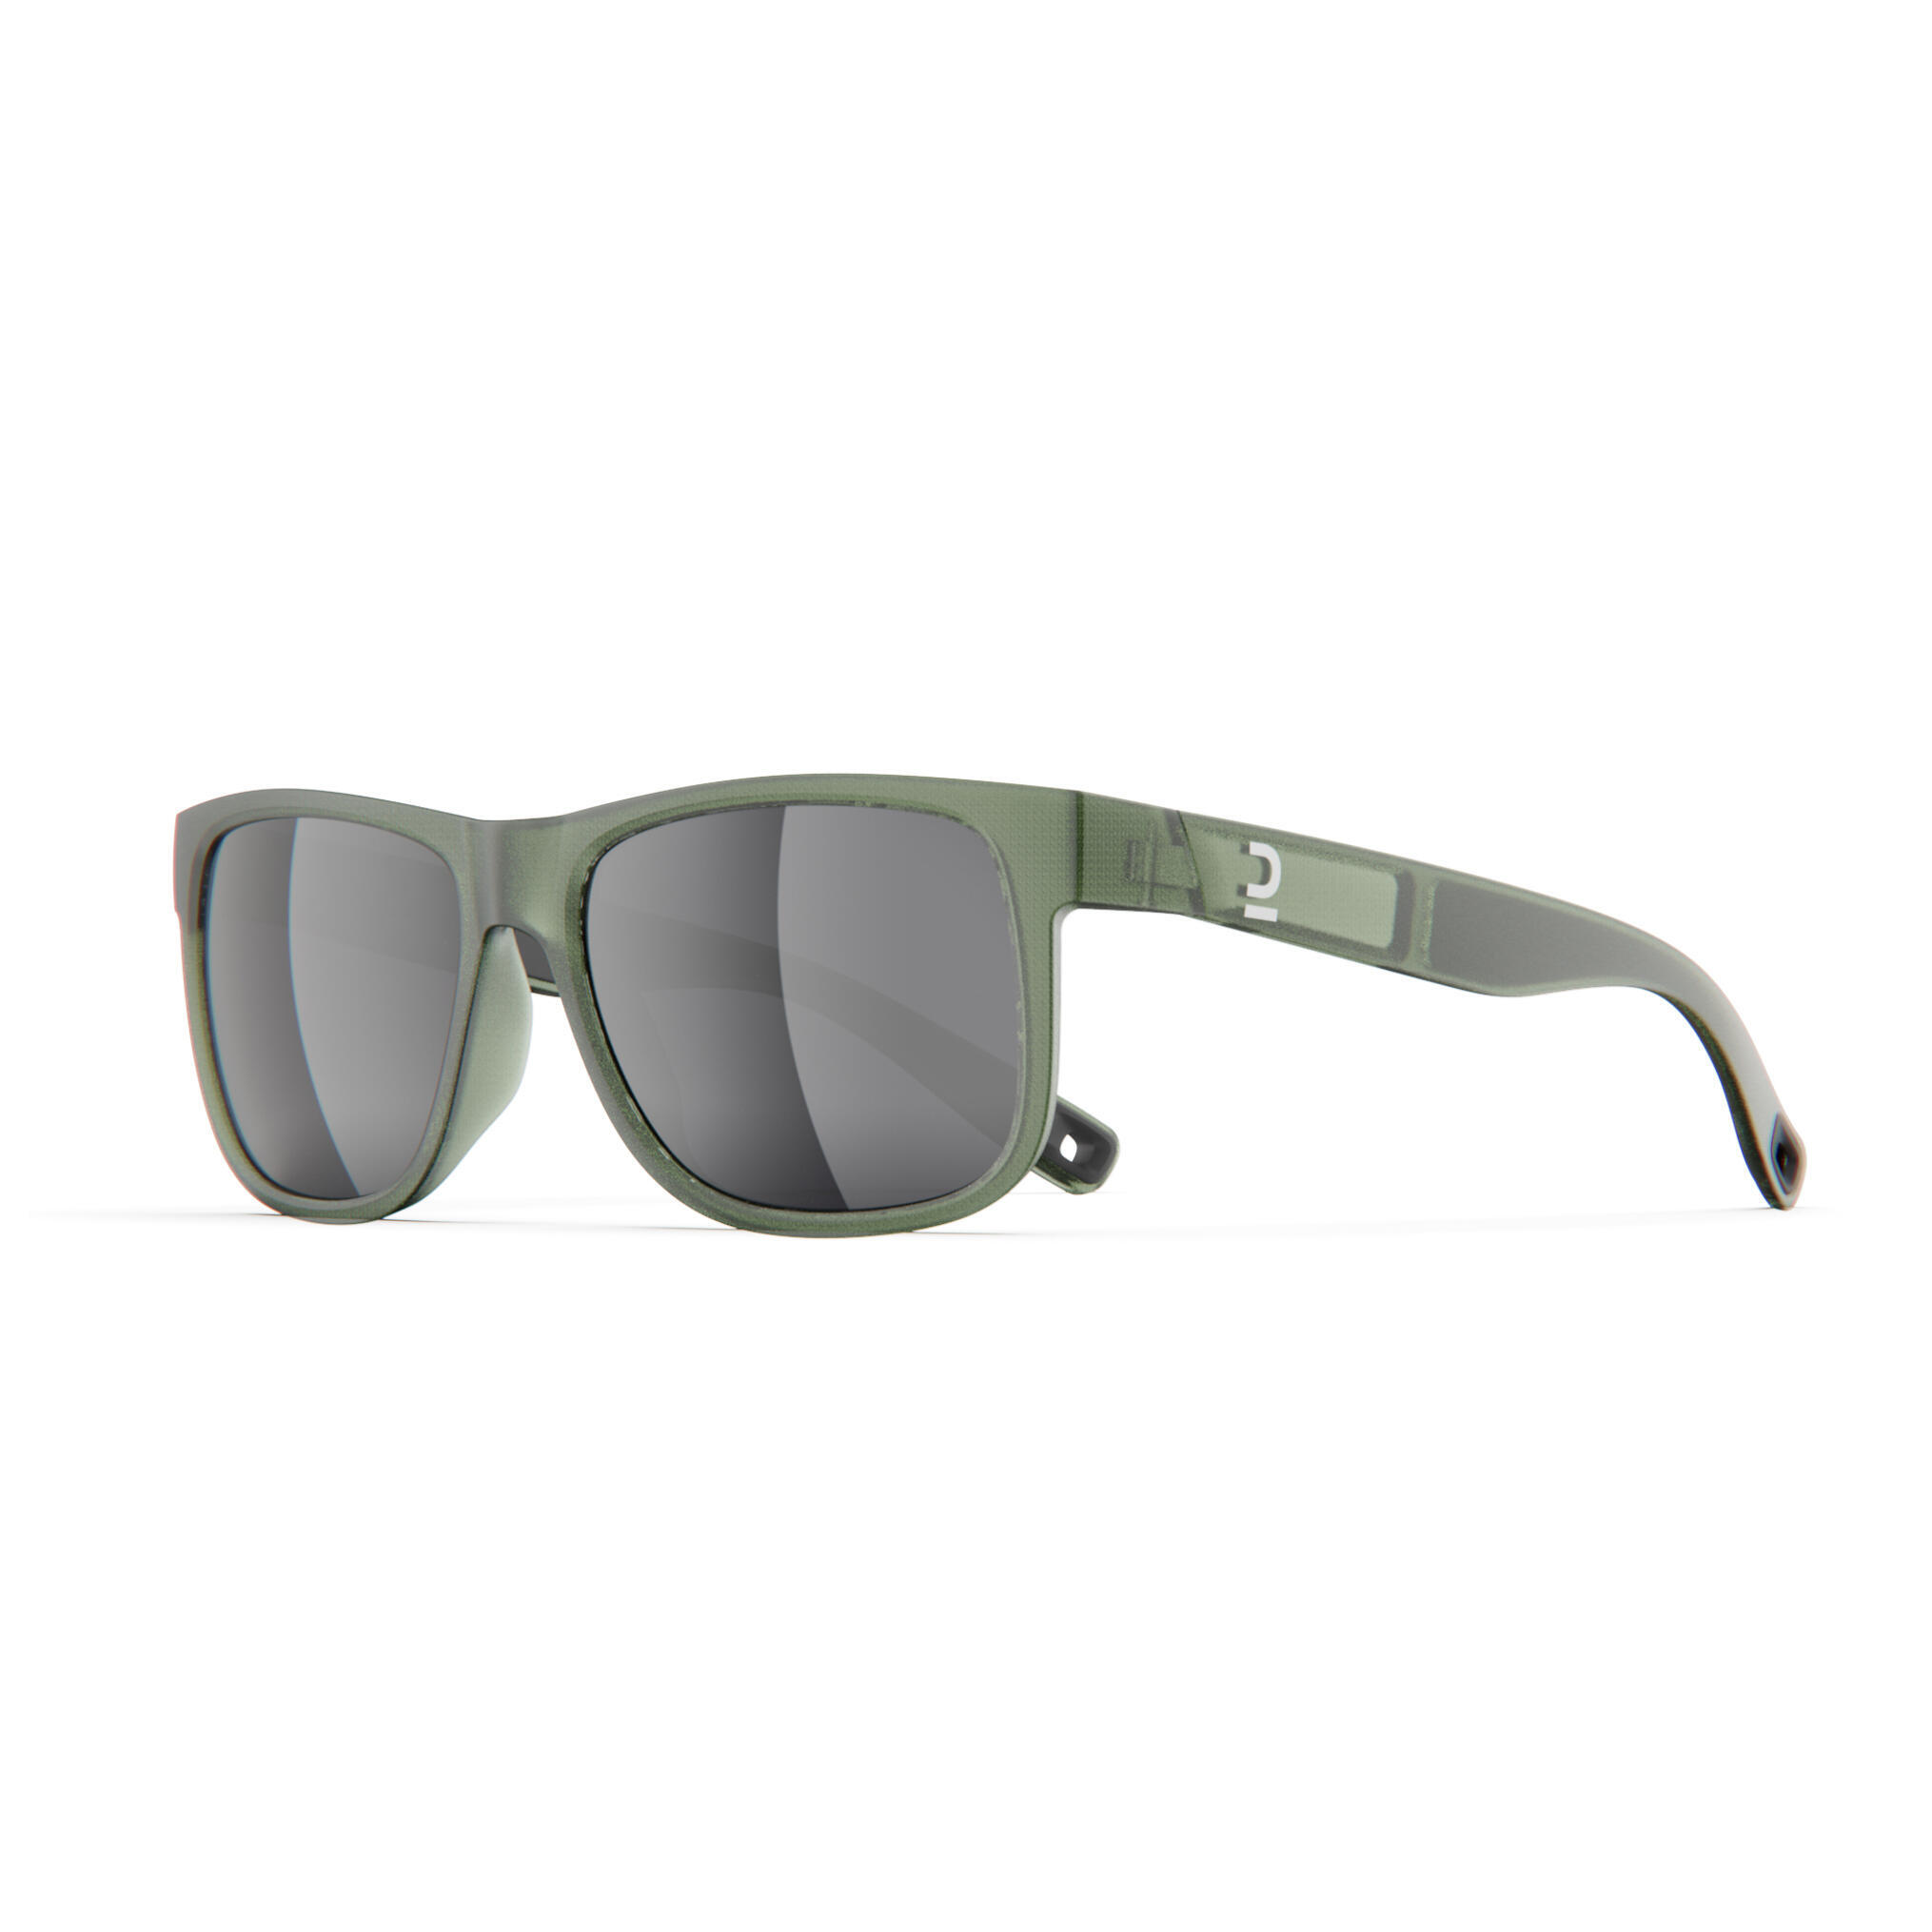 очки held 9541 солнцезащитные зеленый Очки солнцезащитные Quechua MH530 для походов, категории 3, хаки / серебристый / лаврово-зеленый